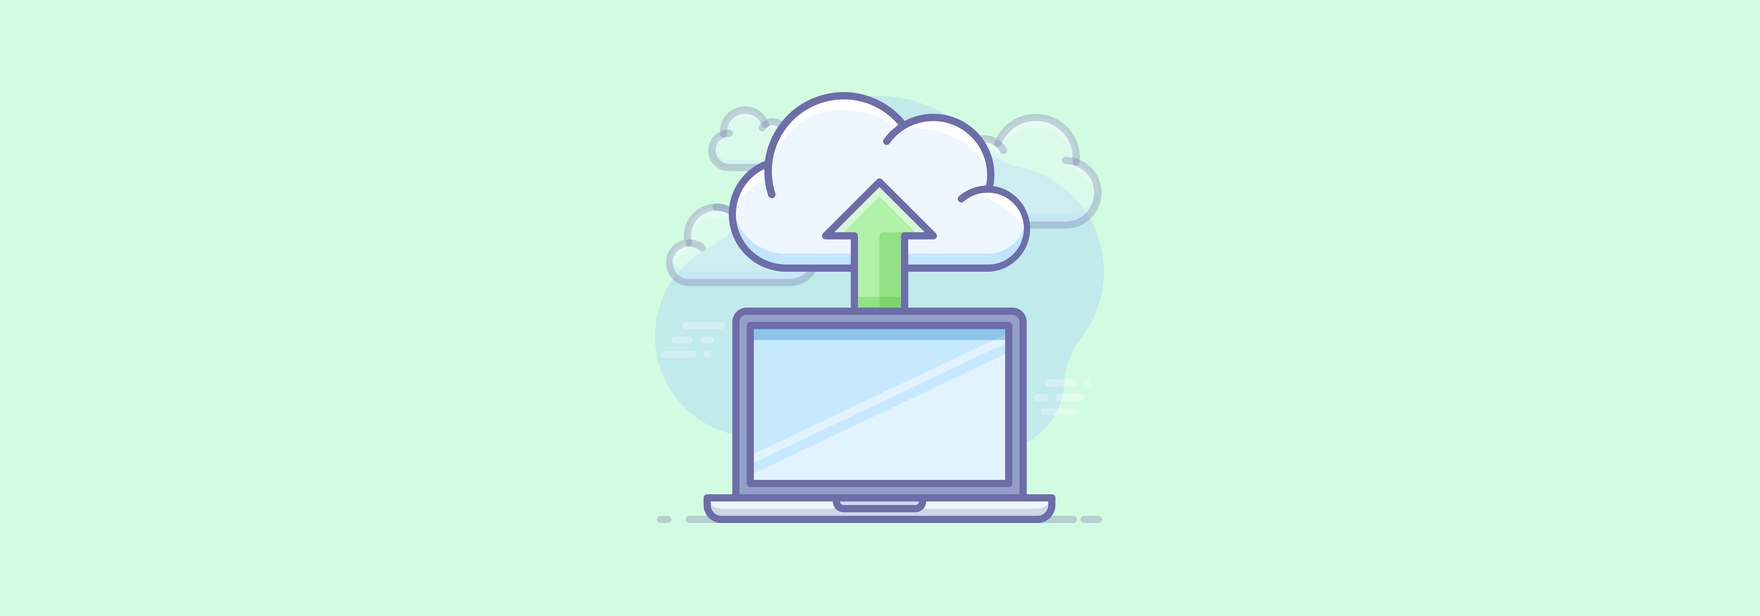 Выбор системы хранения данных: 6 главных вопросов облачному провайдеру